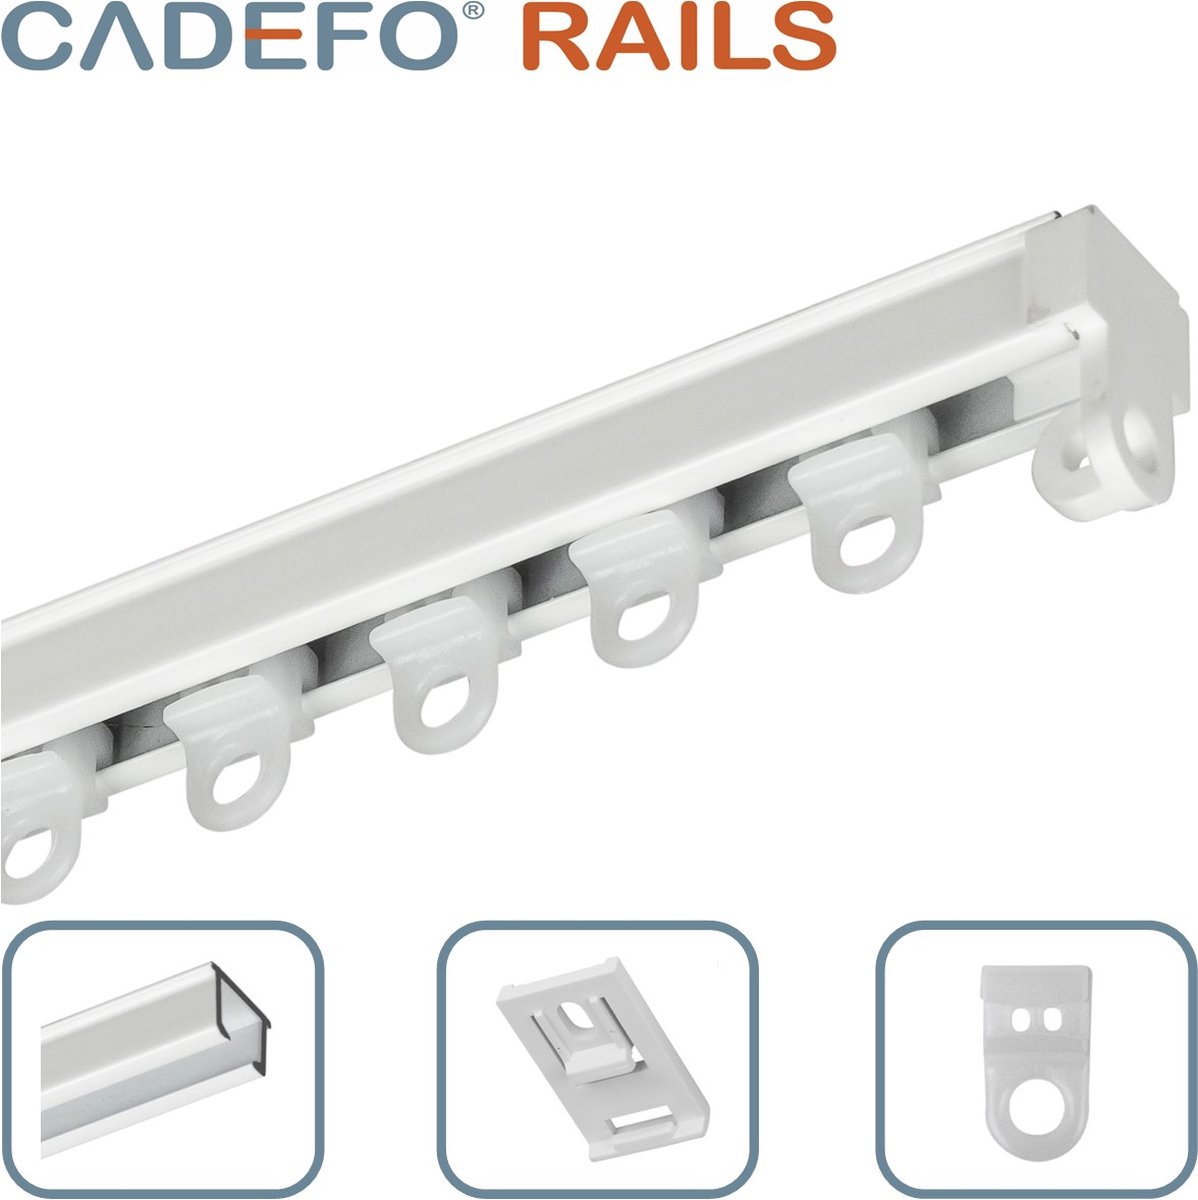 CADEFO RAILS (151 - 200 cm) Gordijnrails - Compleet op maat! - UIT 1 STUK - Leverbaar tot 6 meter - Plafondbevestiging - Lengte 167 cm